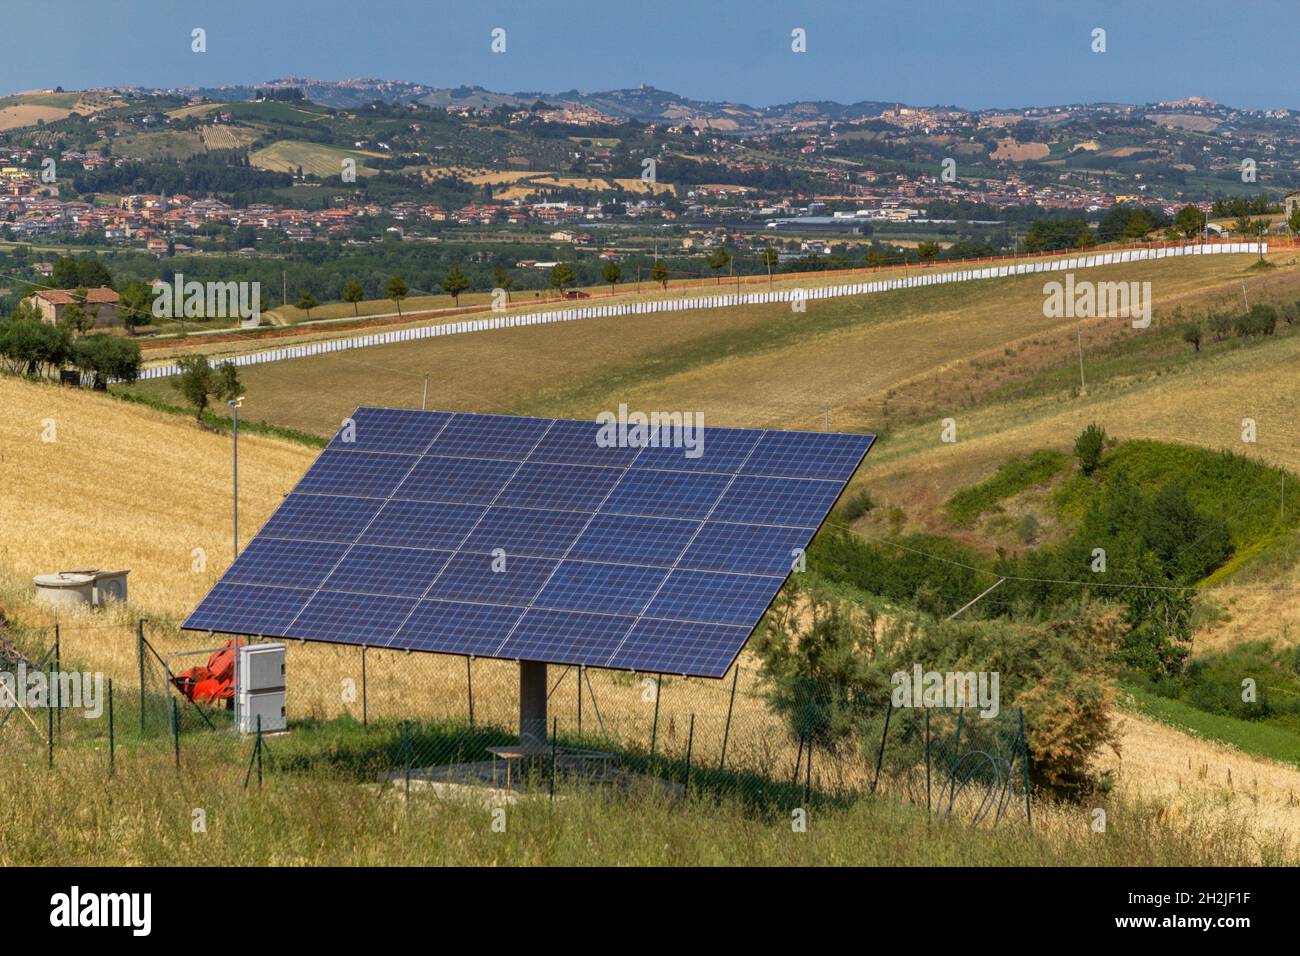 Solarpaneele auf einem Hügel versorgen ein alpines Haus in der Provinz Ascoli Piceno in den Marken, Italien. Stockfoto